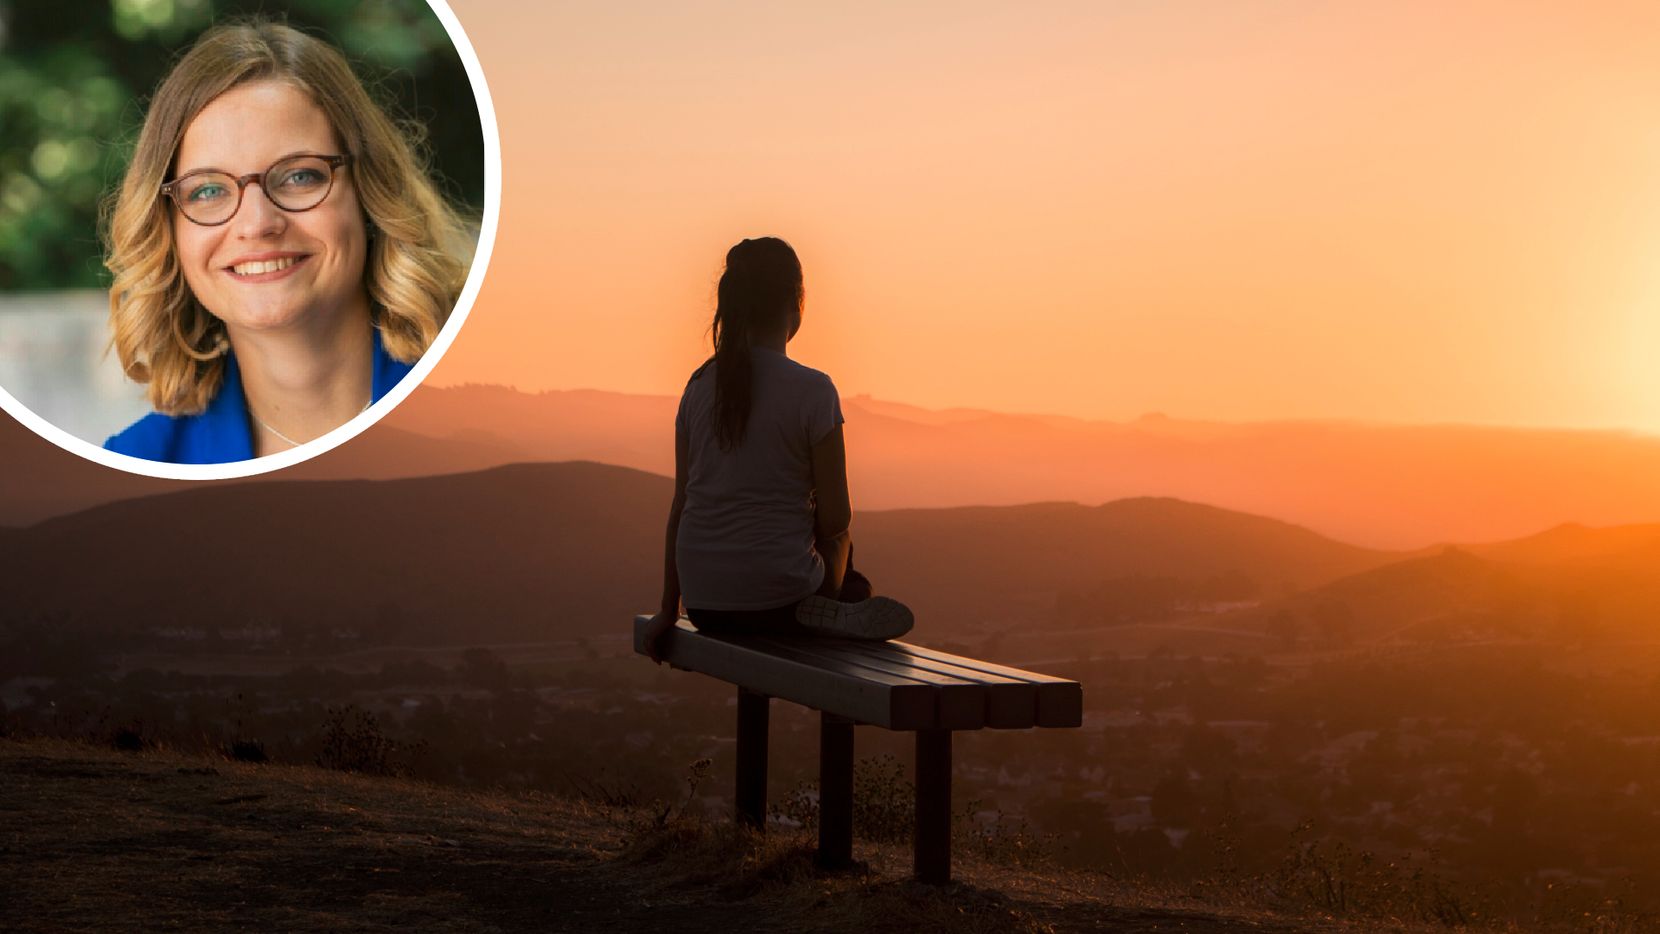 Man sieht eine Frau, die bei Sonnenuntergang auf einer Sitzbank sitzt.